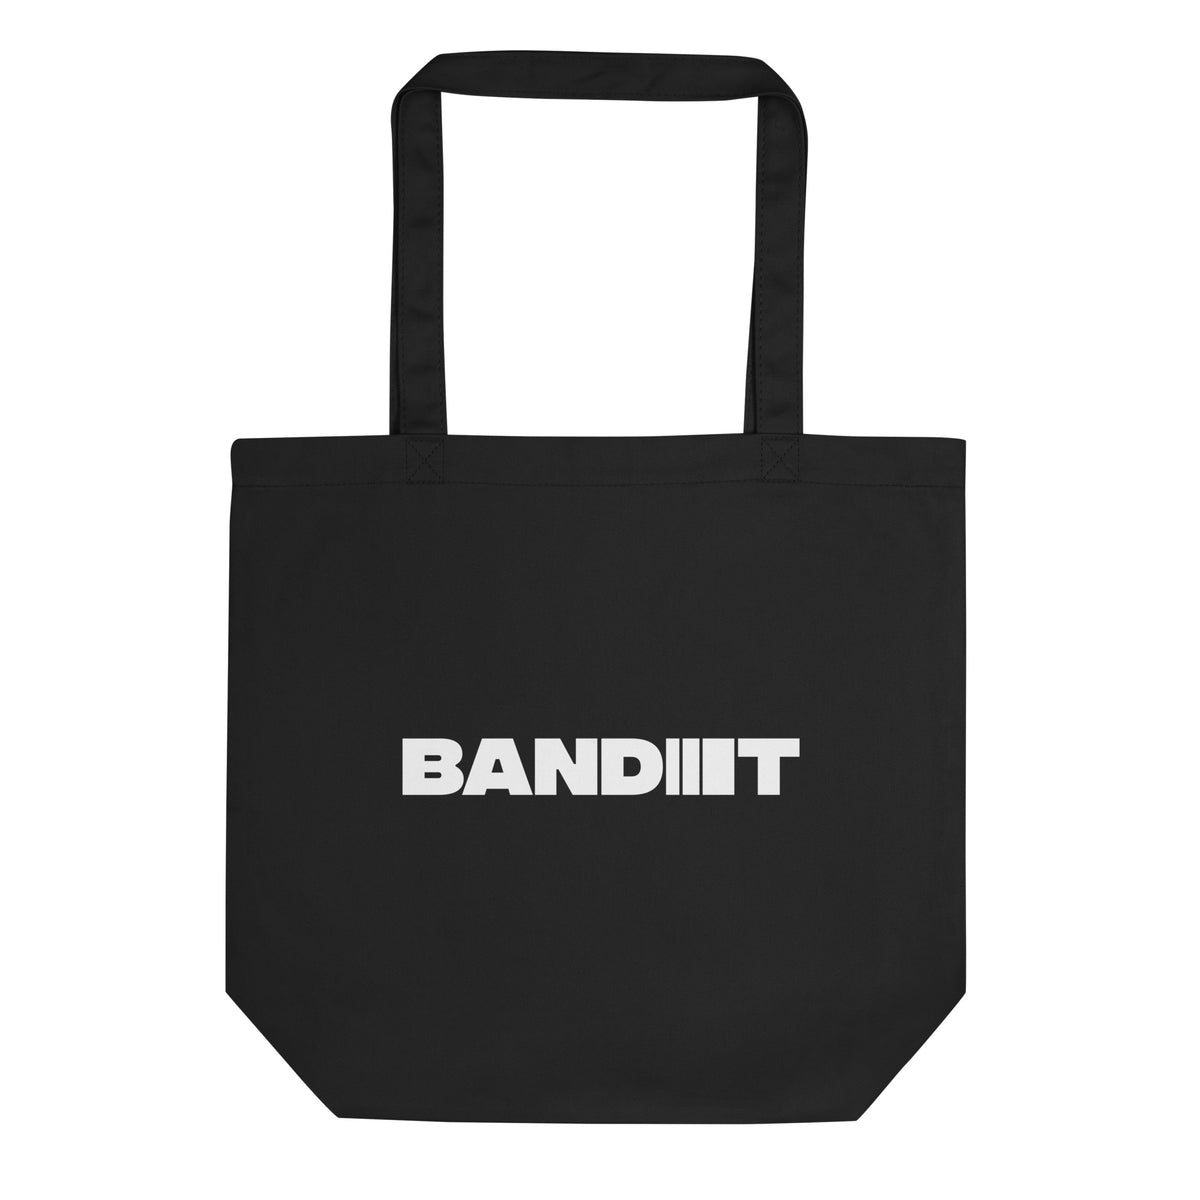 Bandit Tote Bag